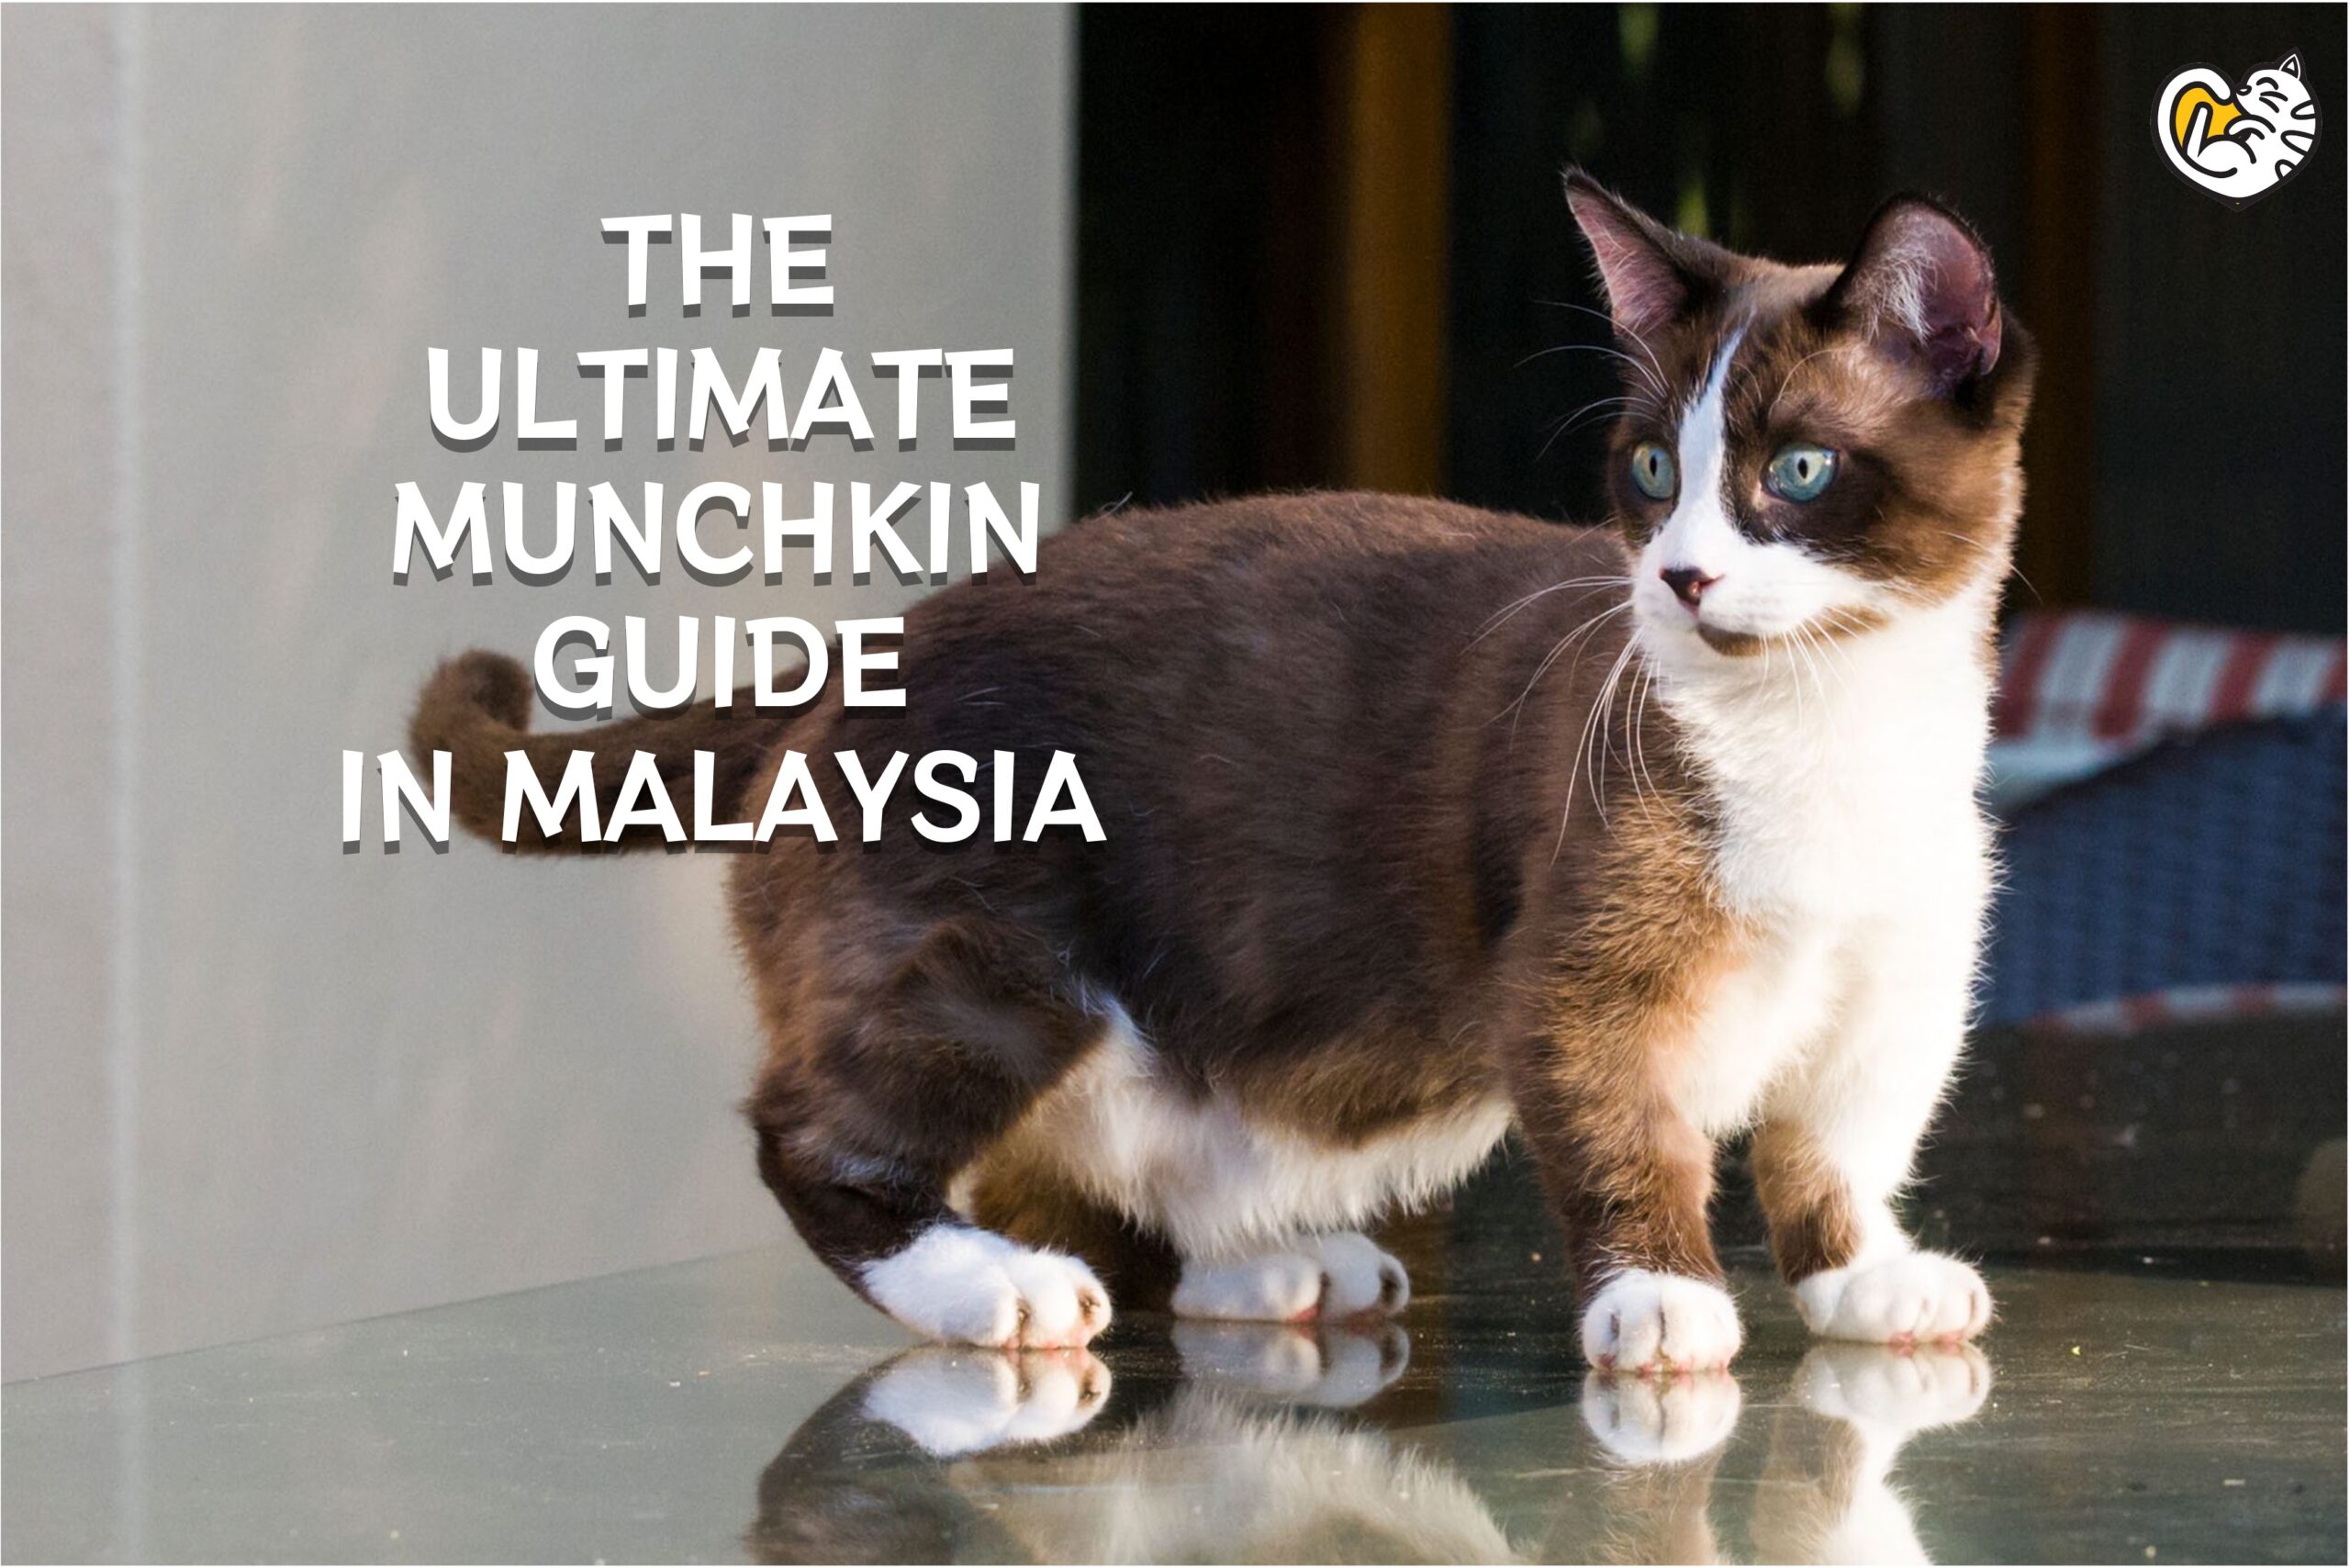 Panduan Munchkin Terbaik di Malaysia (Kredit Imej: Michael Beder / Getty Images)